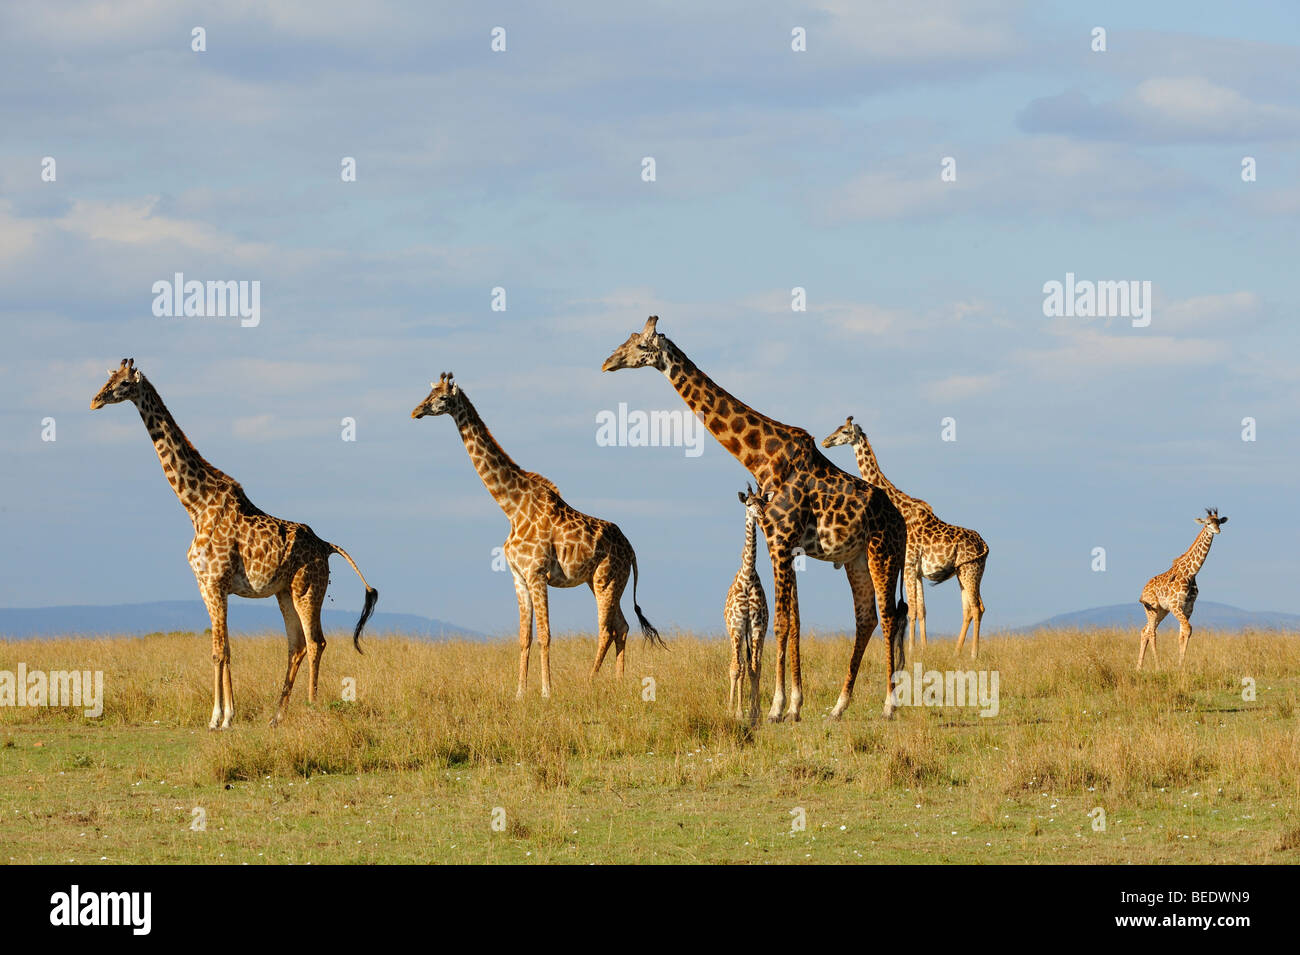 Groupe de girafes Masai (Giraffa camelopardalis tippelskirchi) dans la steppe, la Réserve Naturelle de Masai Mara, Kenya, Afrique de l'Est Banque D'Images